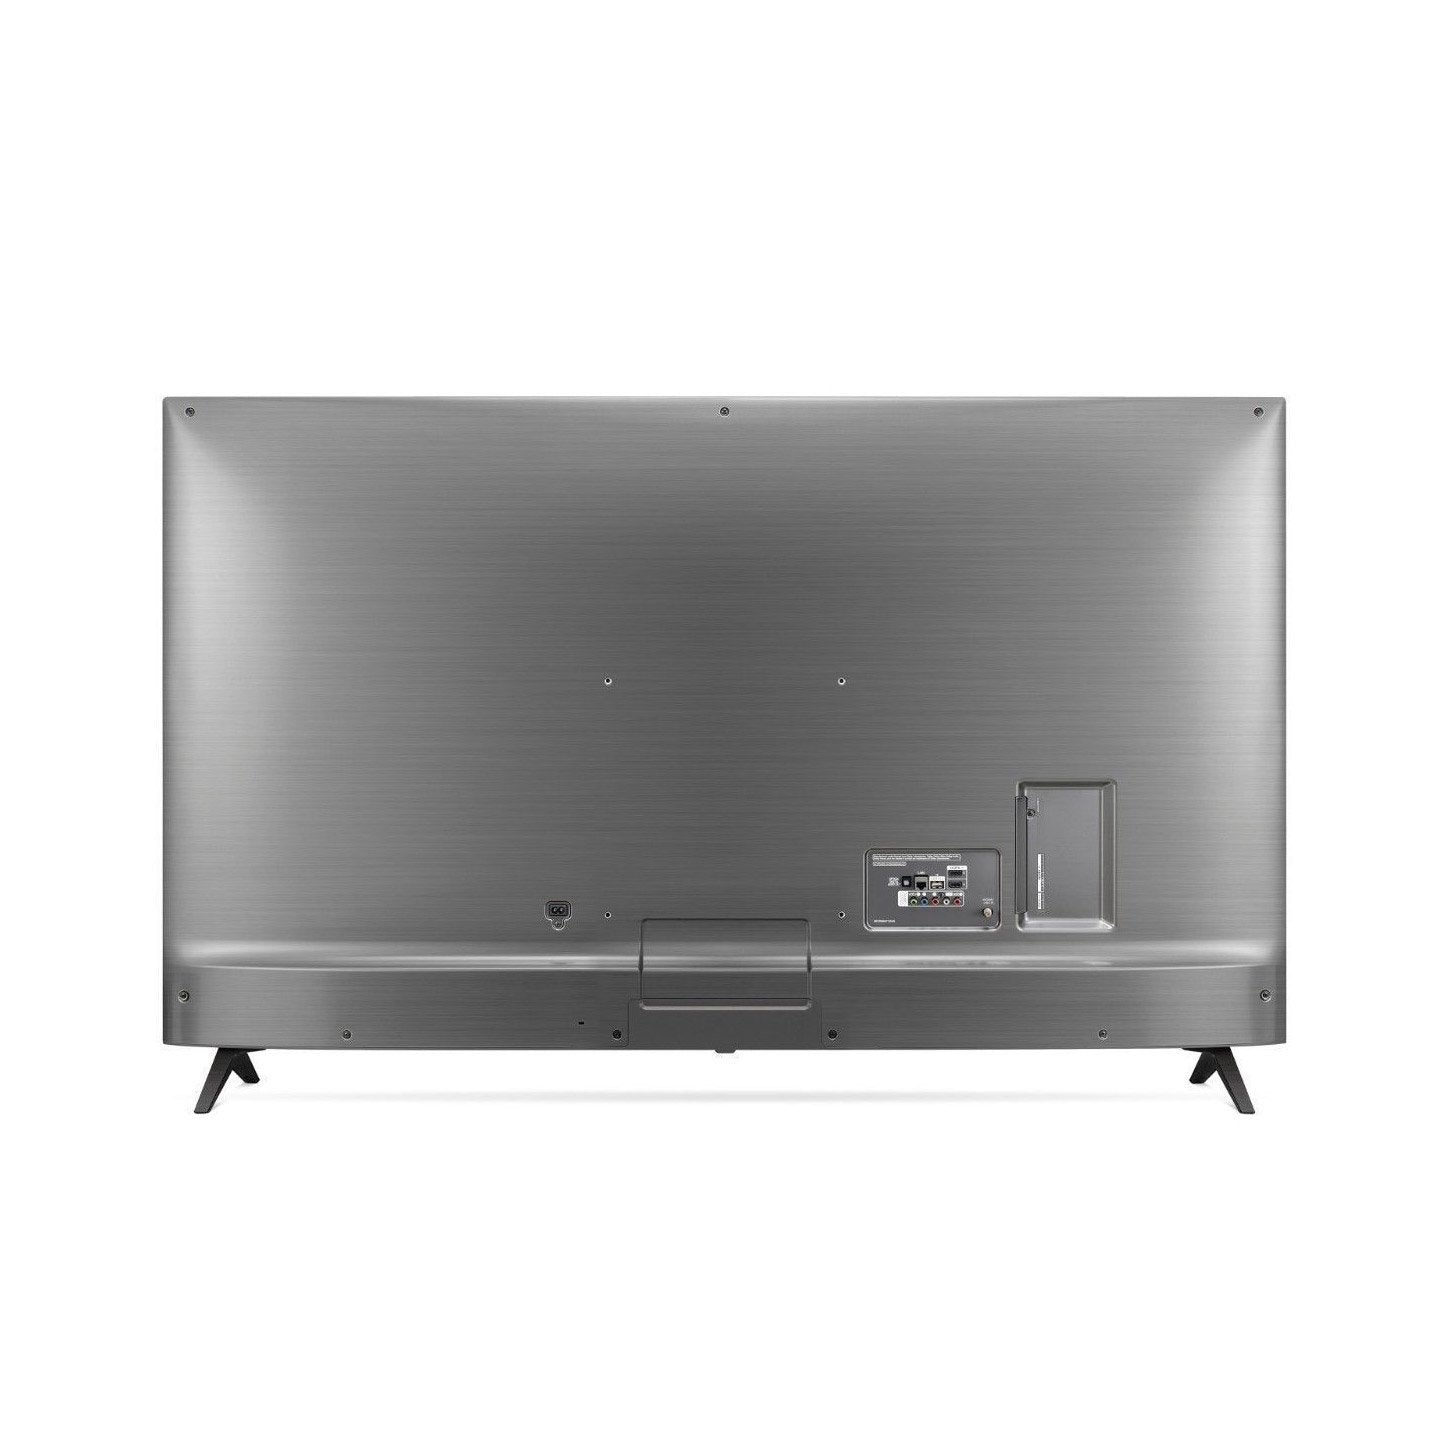 LG 75UK6570PUB 75-Inch 4K Ultra HD Smart LED TV